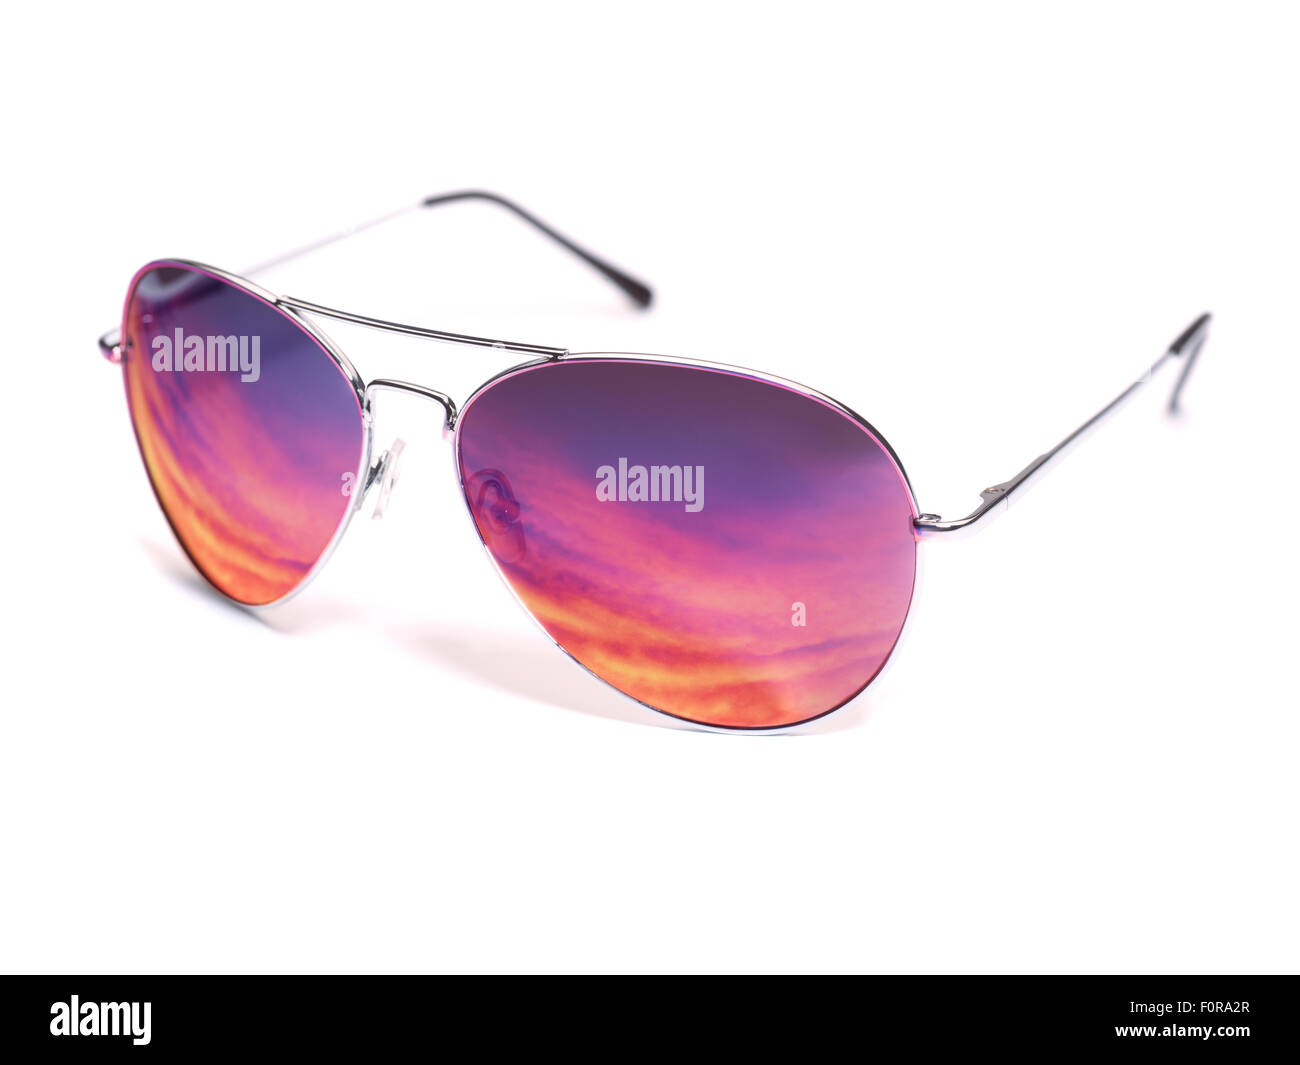 Sunglasses reflecting sunset, isolated on white background Stock Photo